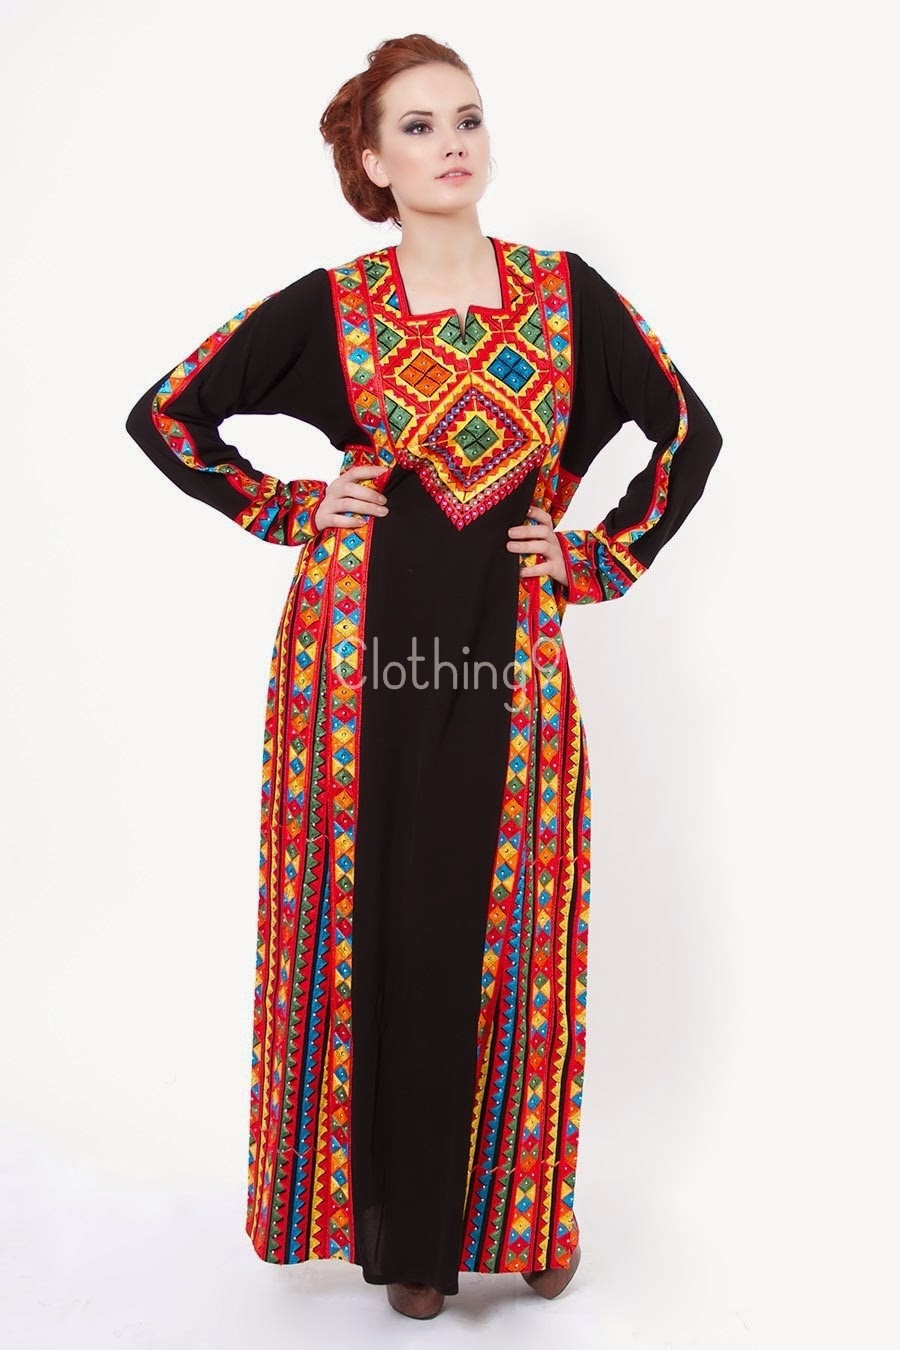 عبايات سوداء قمة الانوثة والاناقة والرشاقة والجمال للمحجبات Embroidered-abaya-designs-2014-dubai-11